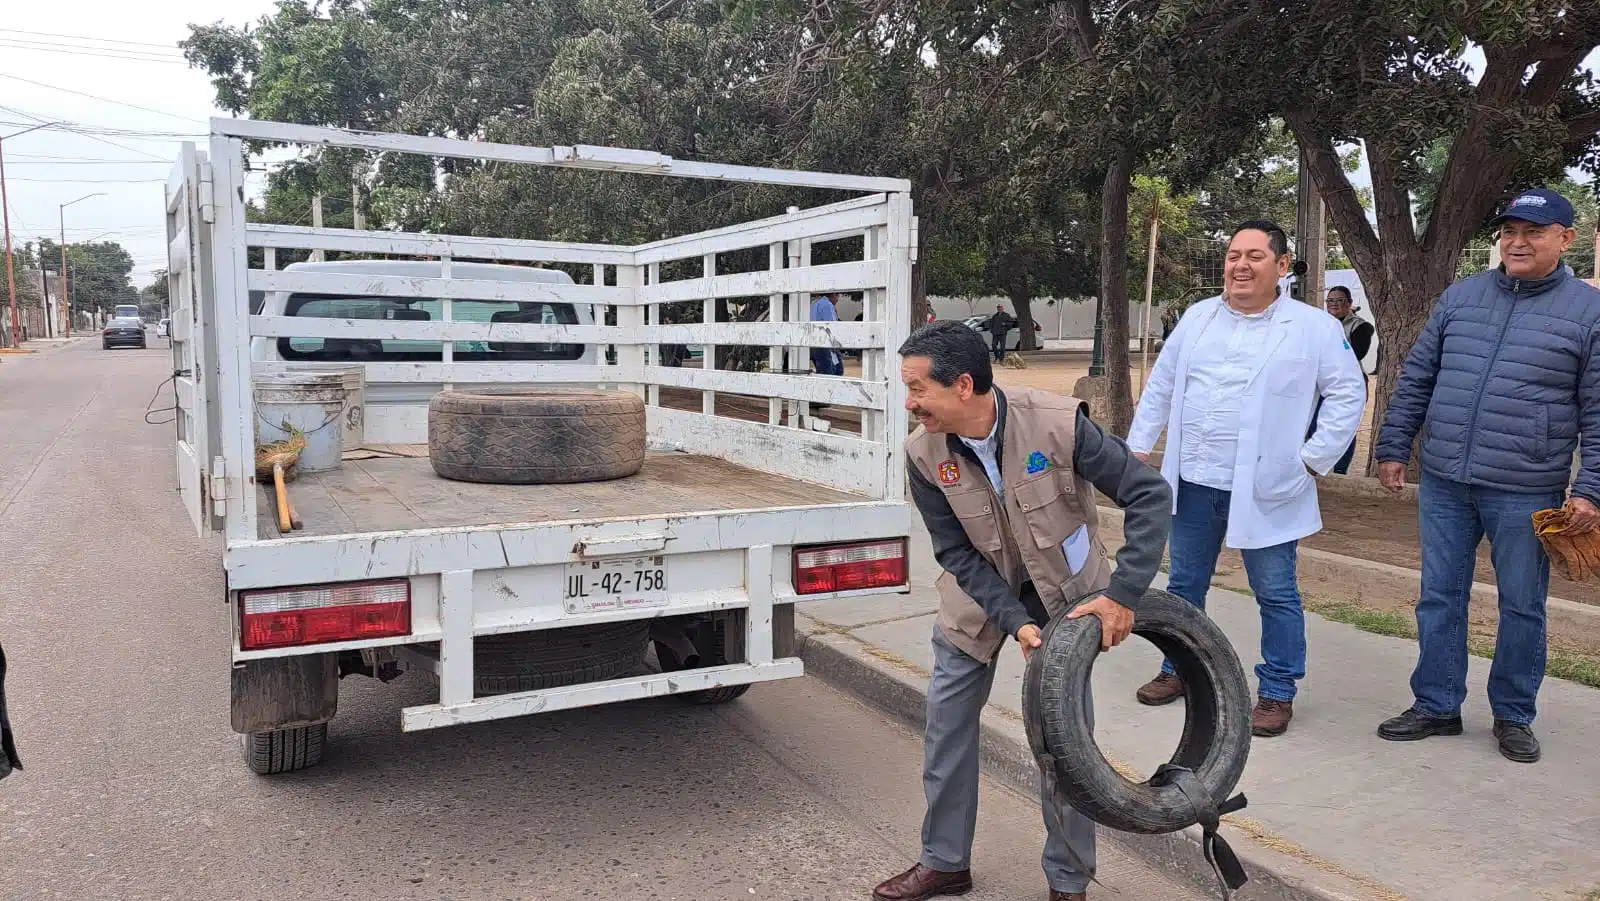 Camioneta, llanta y personas en la campaña de descacharrización para evitar el mosco del dengue en Guasave